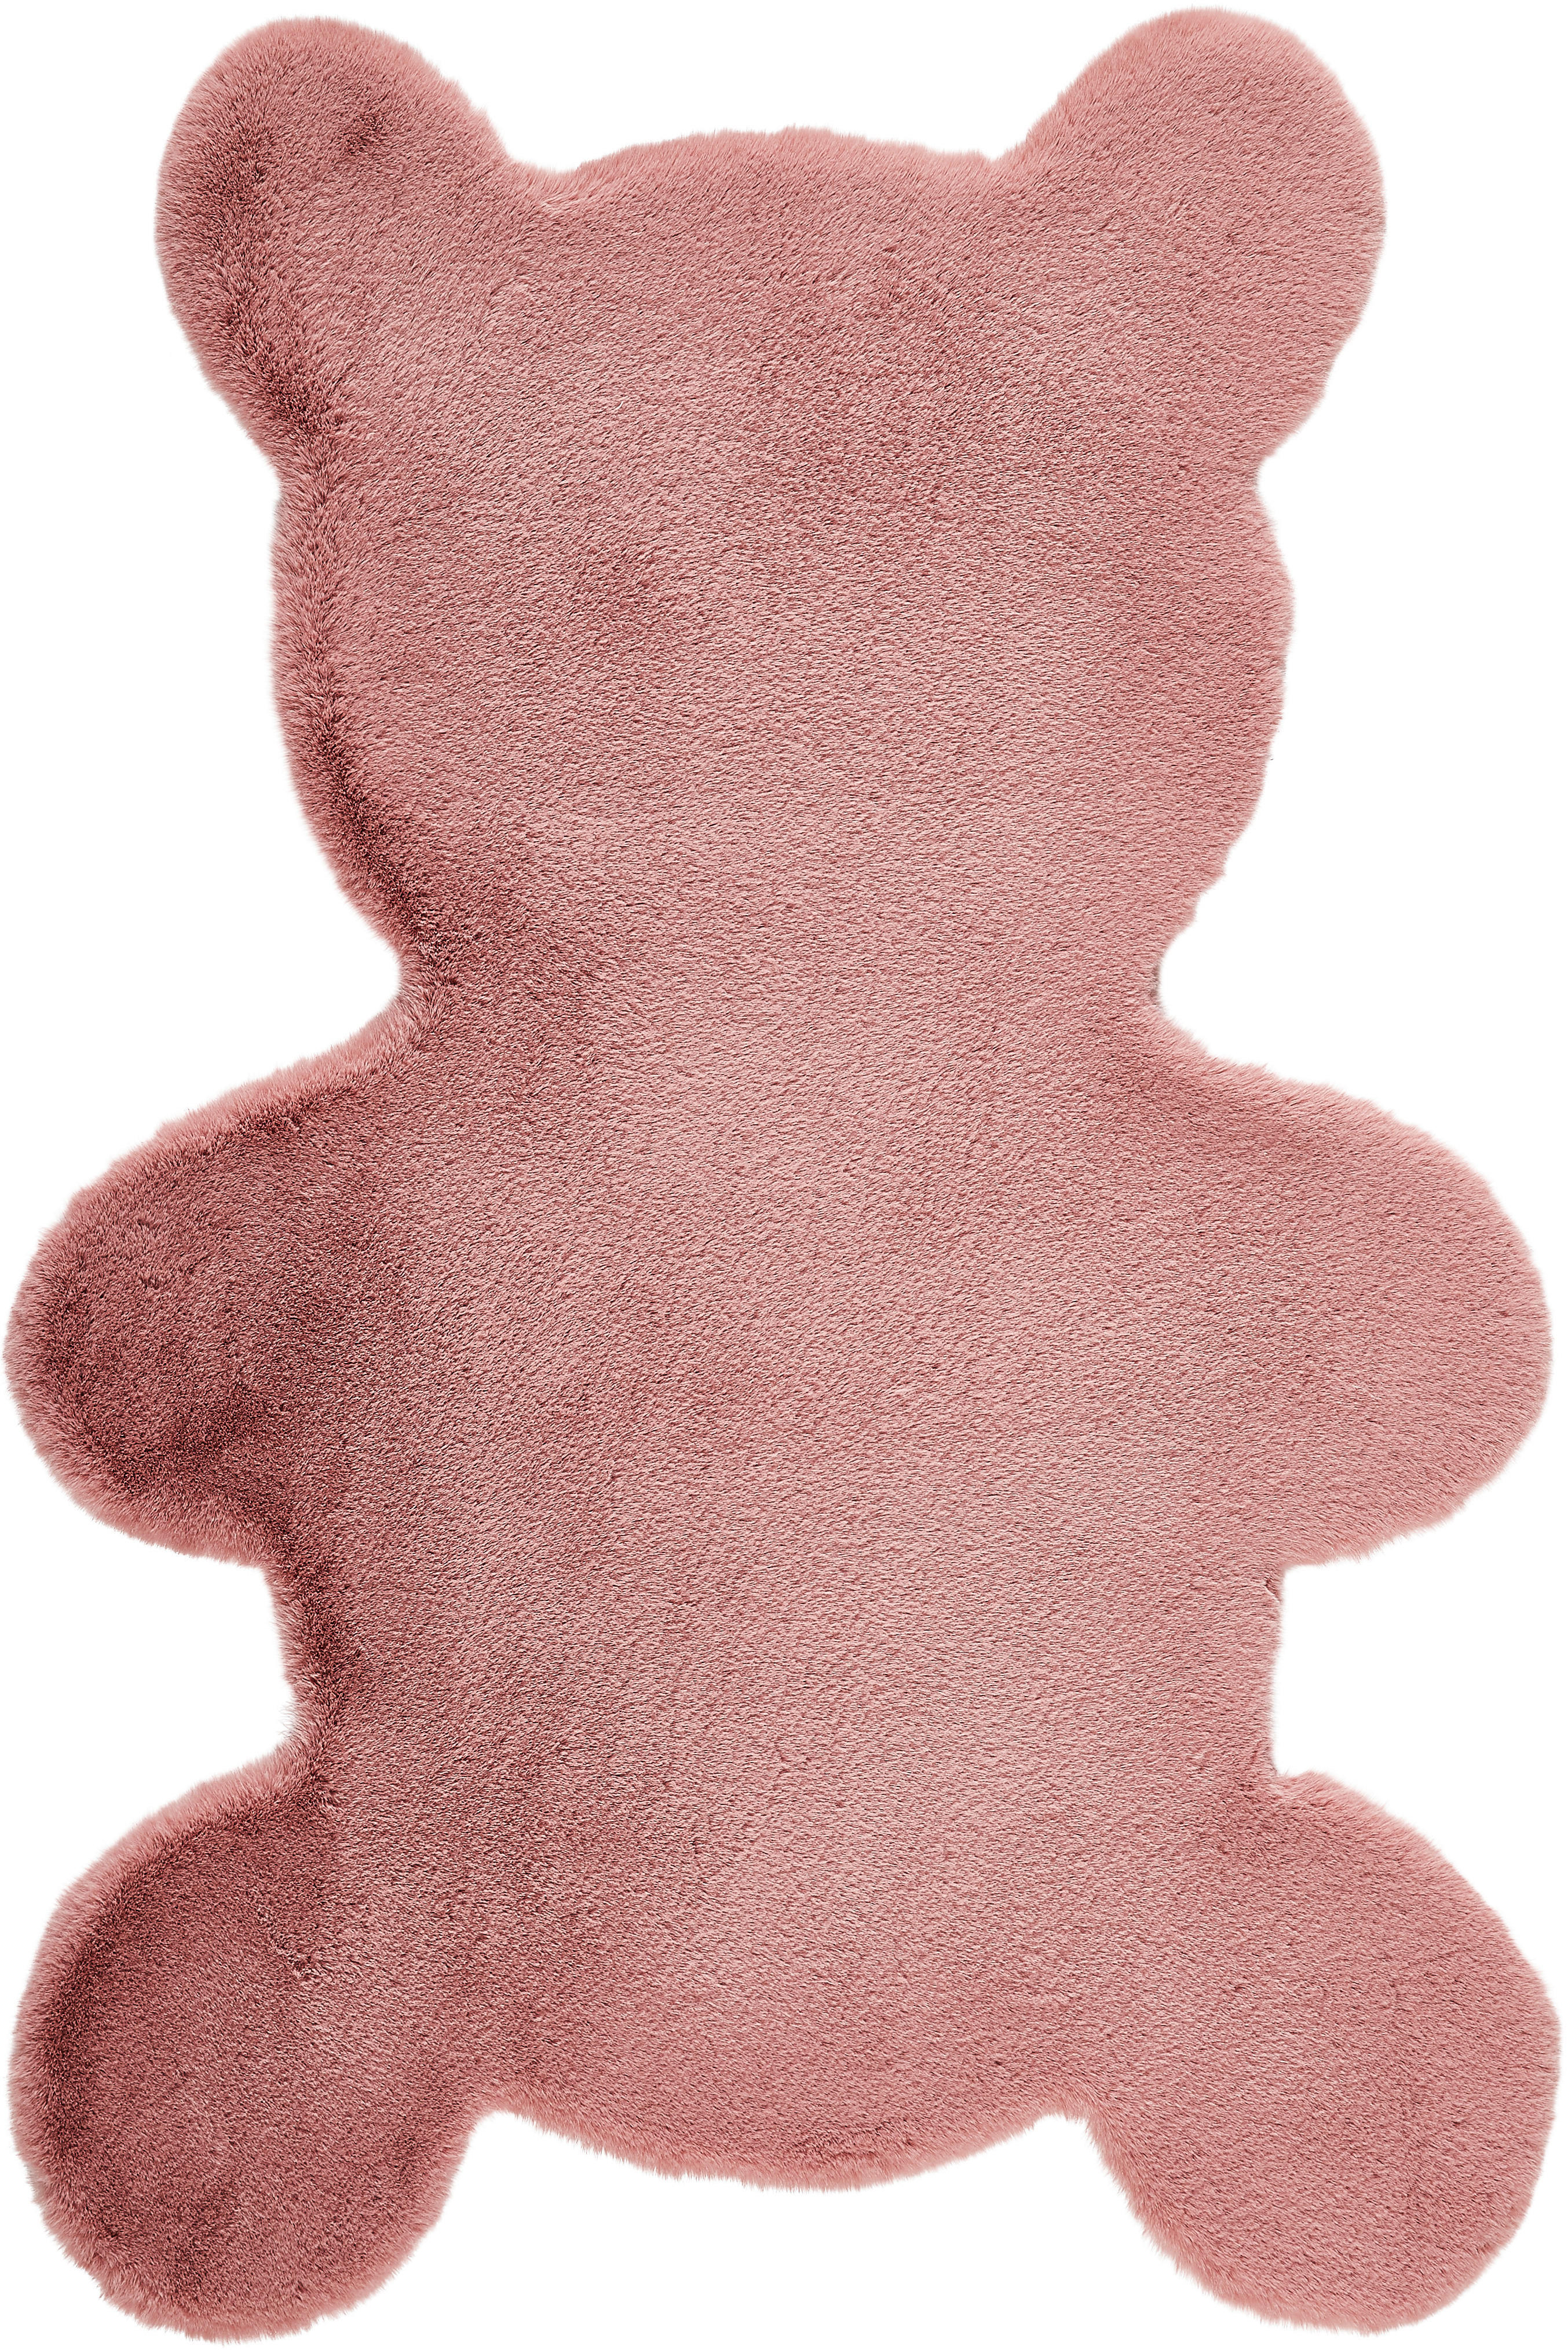 DJEČJI TEPIH  ružičasta     - ružičasta, Trend, tekstil (80/120cm) - Ben'n'jen